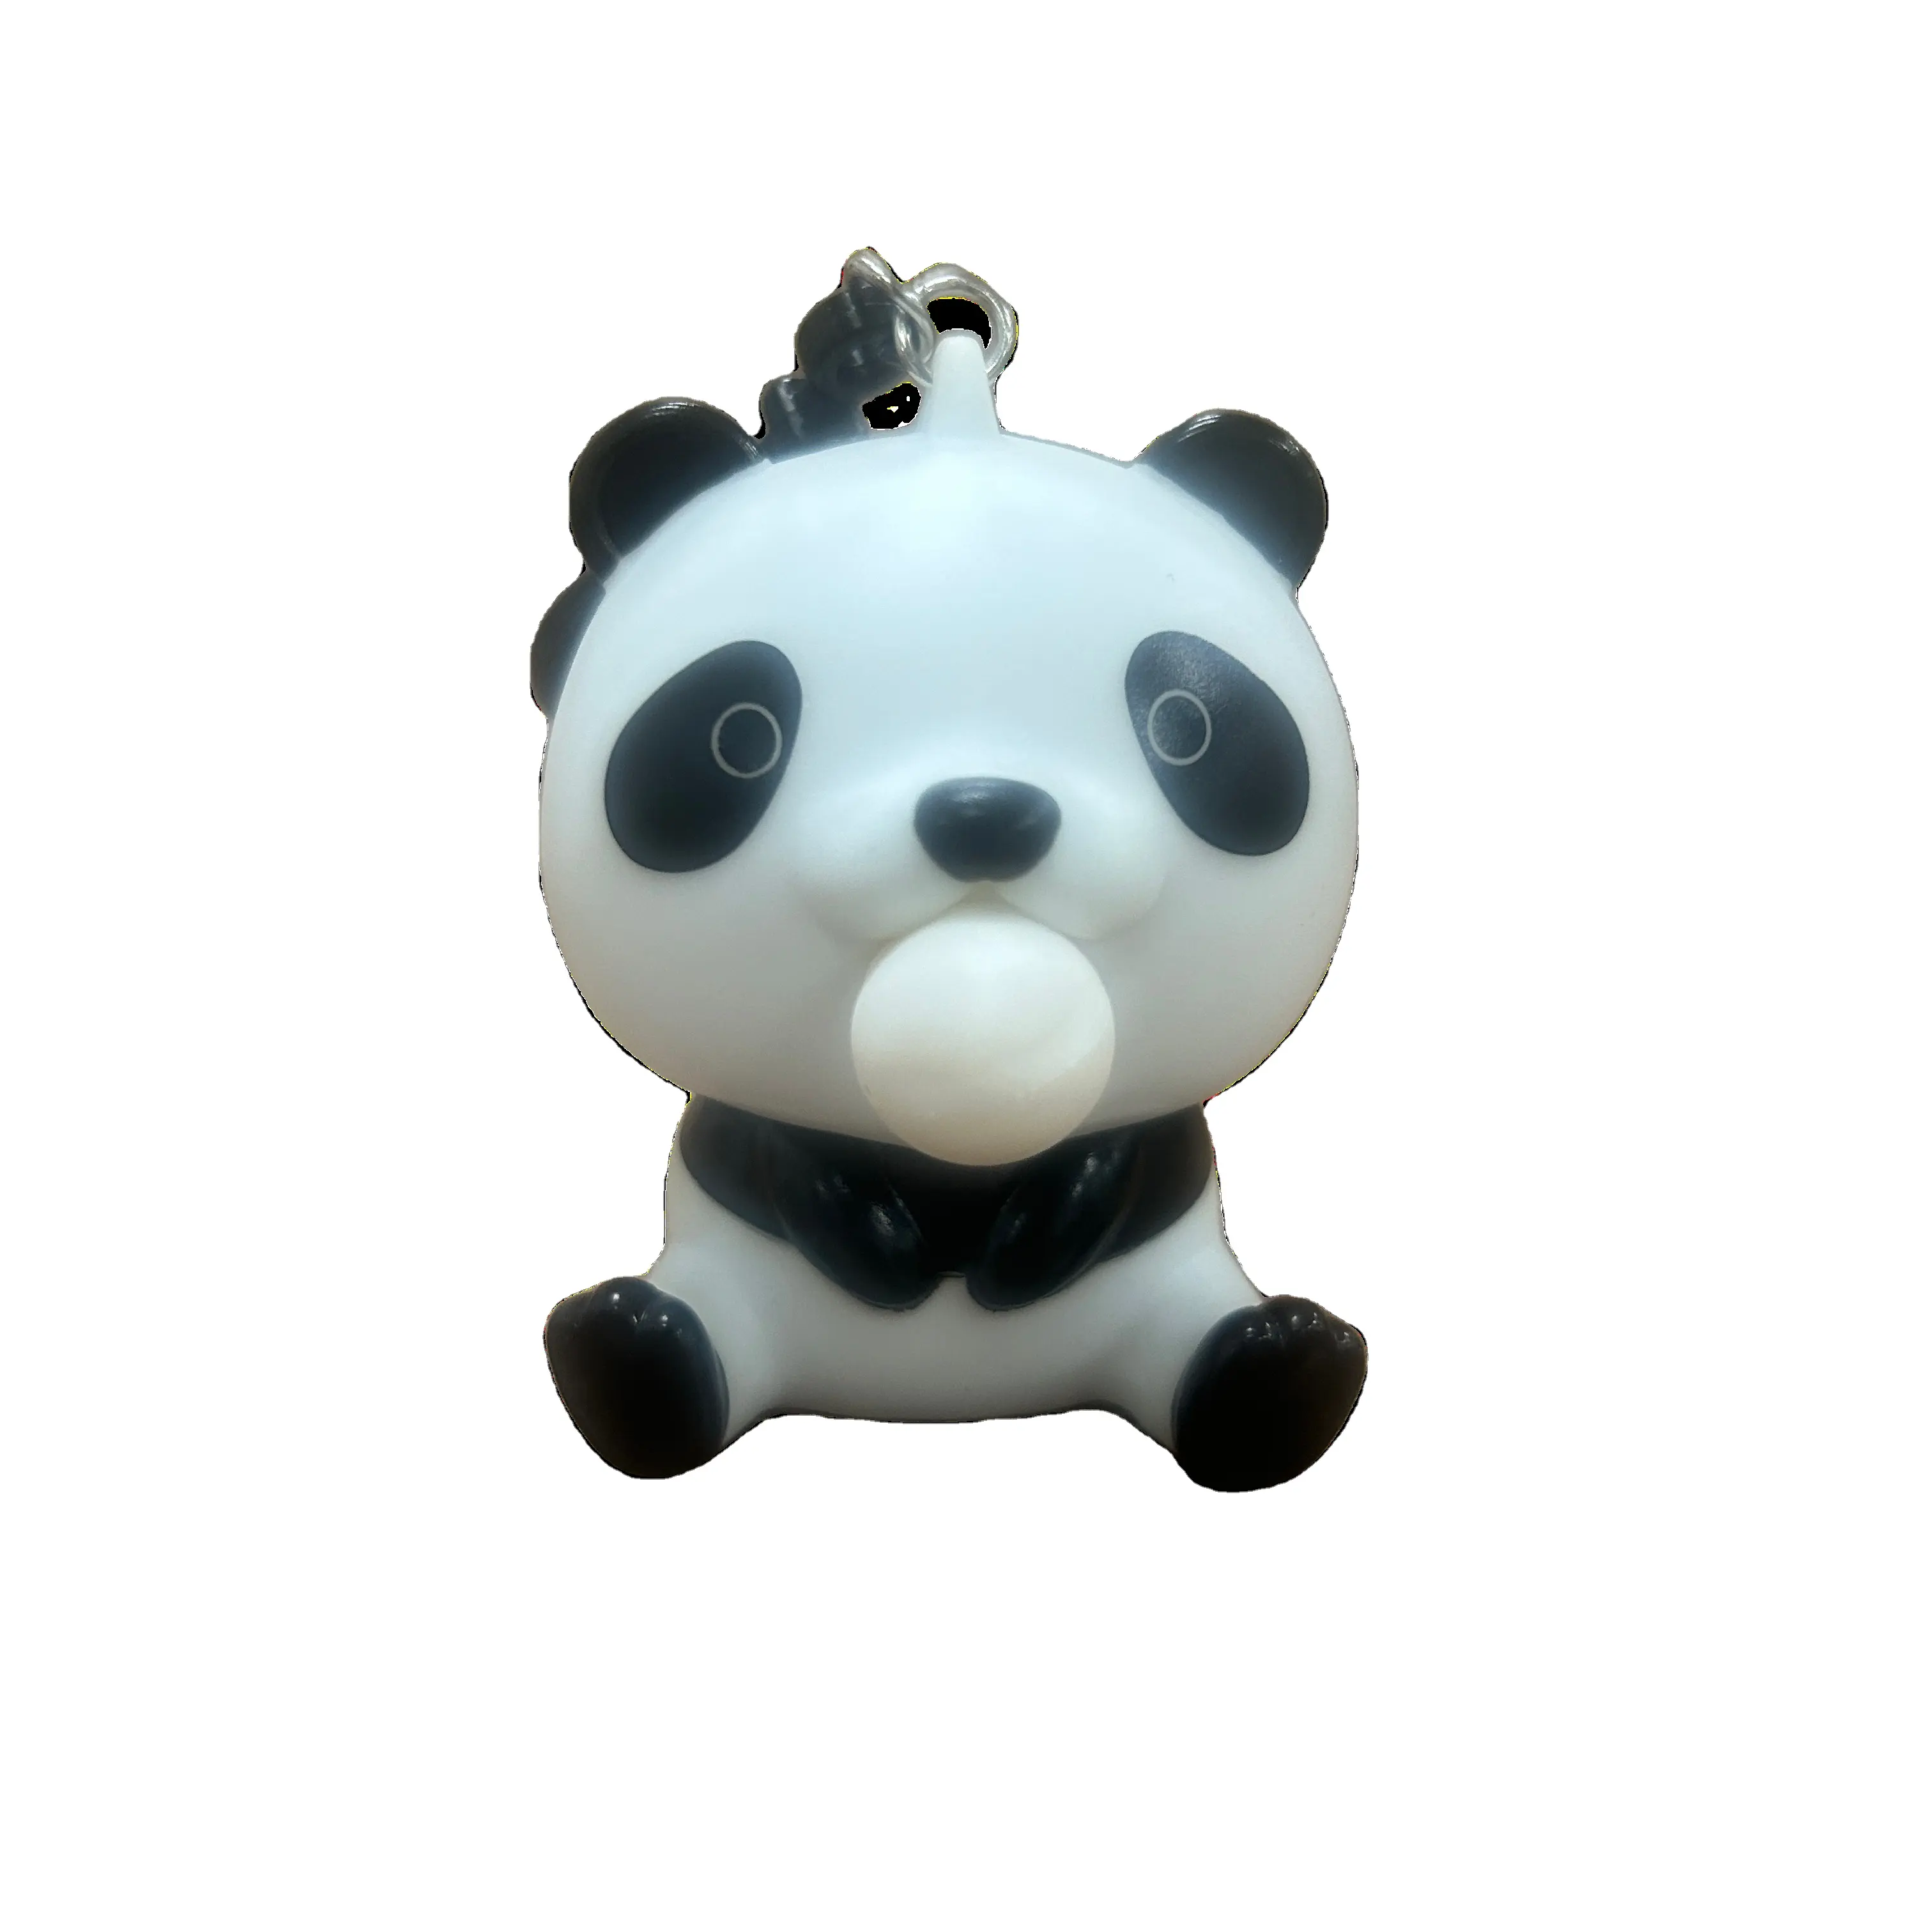 Thiết kế mới Panda Shaped bóp Bong Bóng nhựa PVC cuốn tiểu thuyết và quirky Keychain đồ chơi